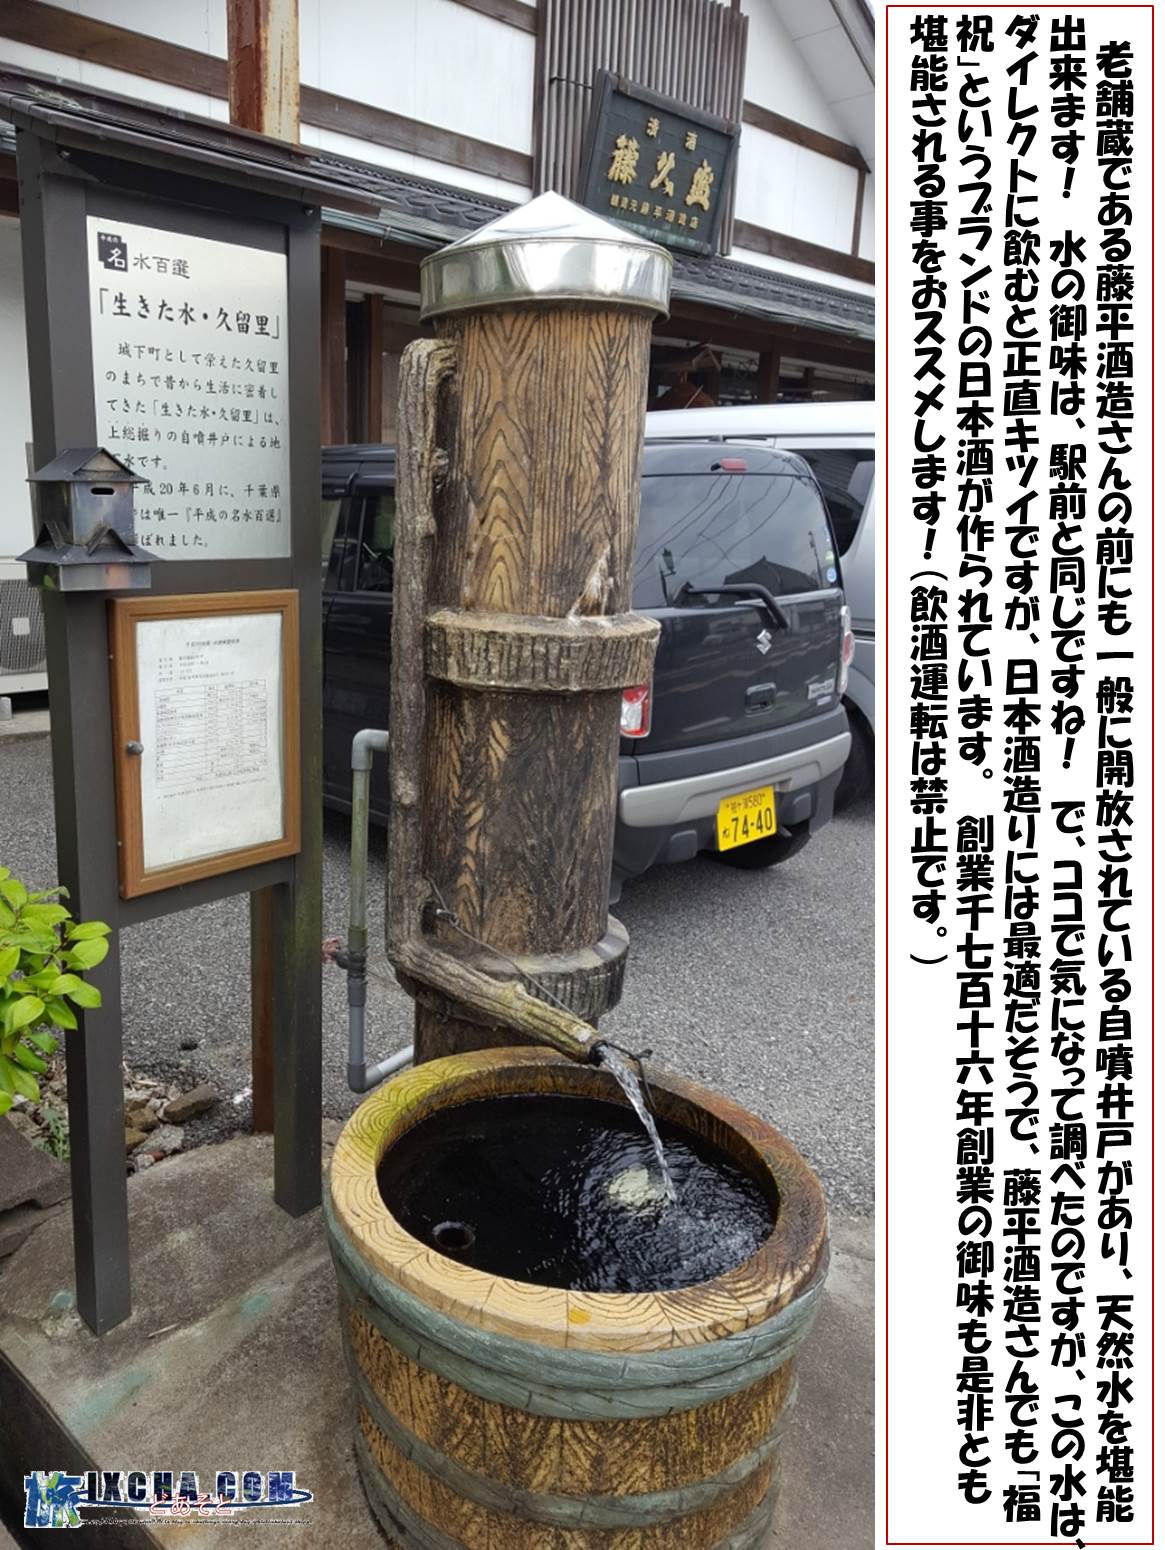 老舗蔵である藤平酒造さんの前にも一般に開放されている自噴井戸があり、天然水を堪能出来ます！　水の御味は、駅前と同じですね！　で、ココで気になって調べたのですが、この水は、ダイレクトに飲むと正直キツイですが、日本酒造りには最適だそうで、藤平酒造さんでも「福祝」というブランドの日本酒が作られています。　創業1716年創業の御味も是非とも堪能される事をおススメします！（飲酒運転は禁止です！！！）